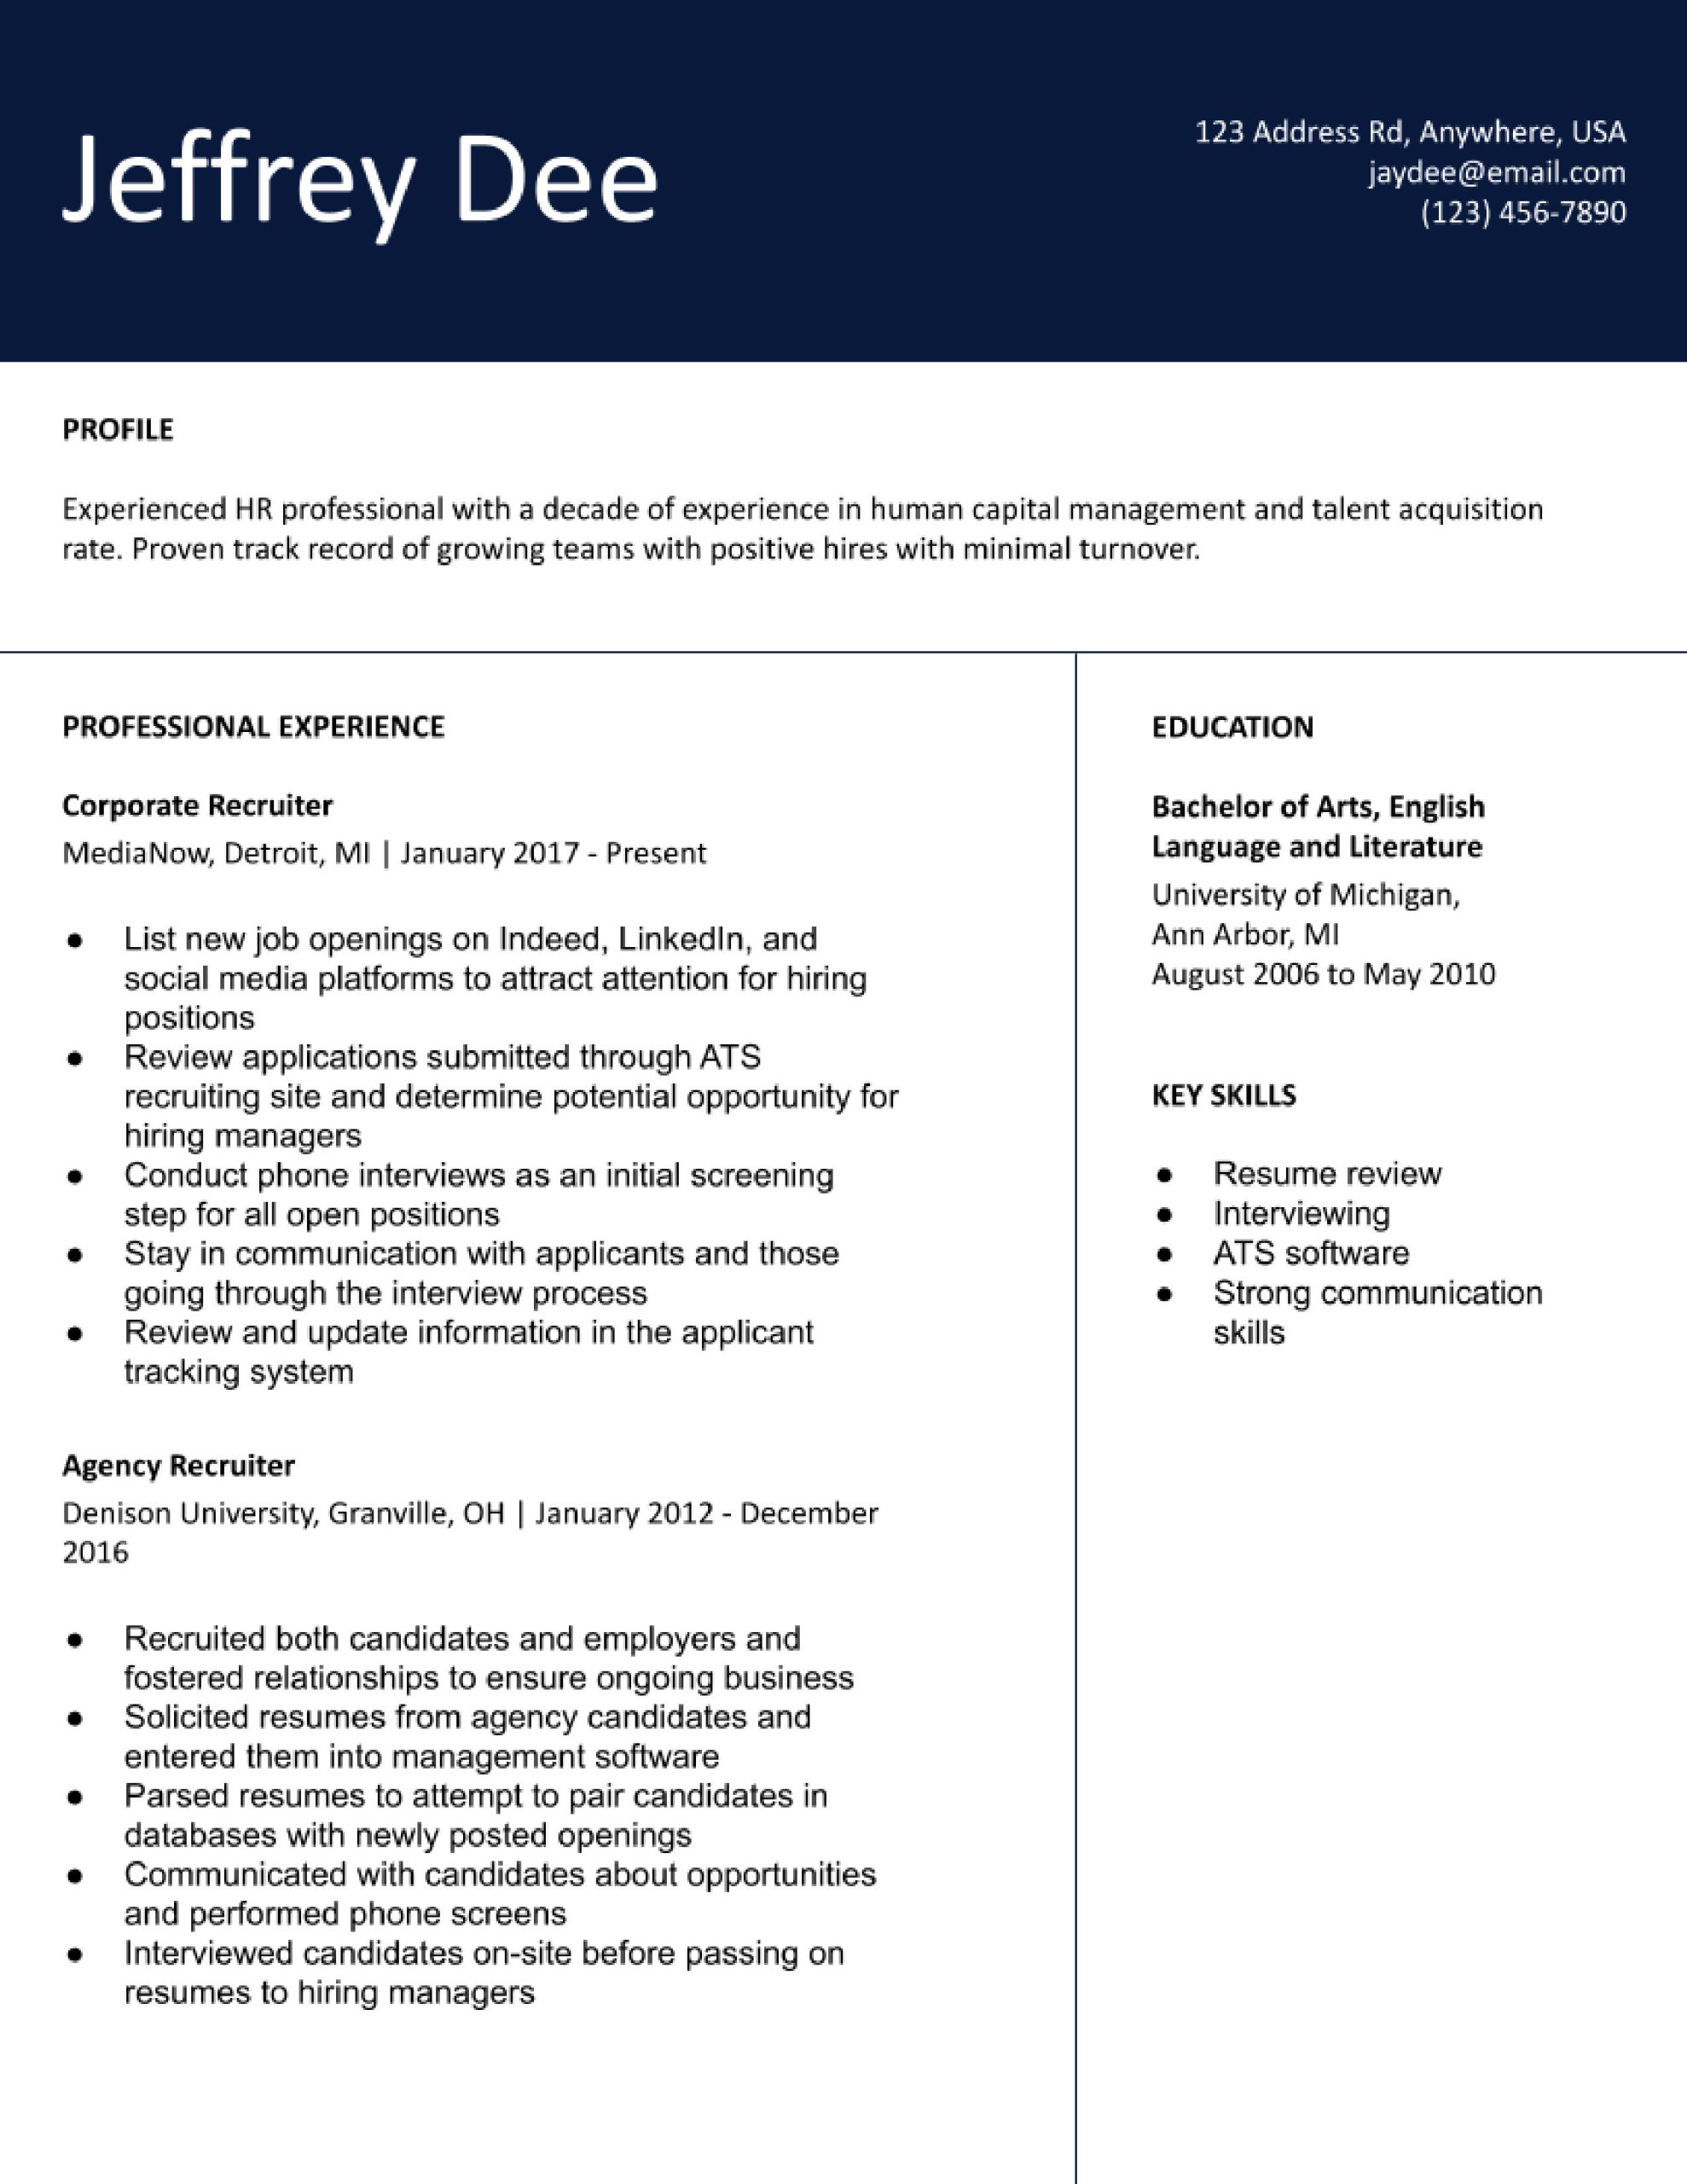 Sample Resume for Entry Level Recruiter Position Recruiter Resume Examples In 2022 – Resumebuilder.com